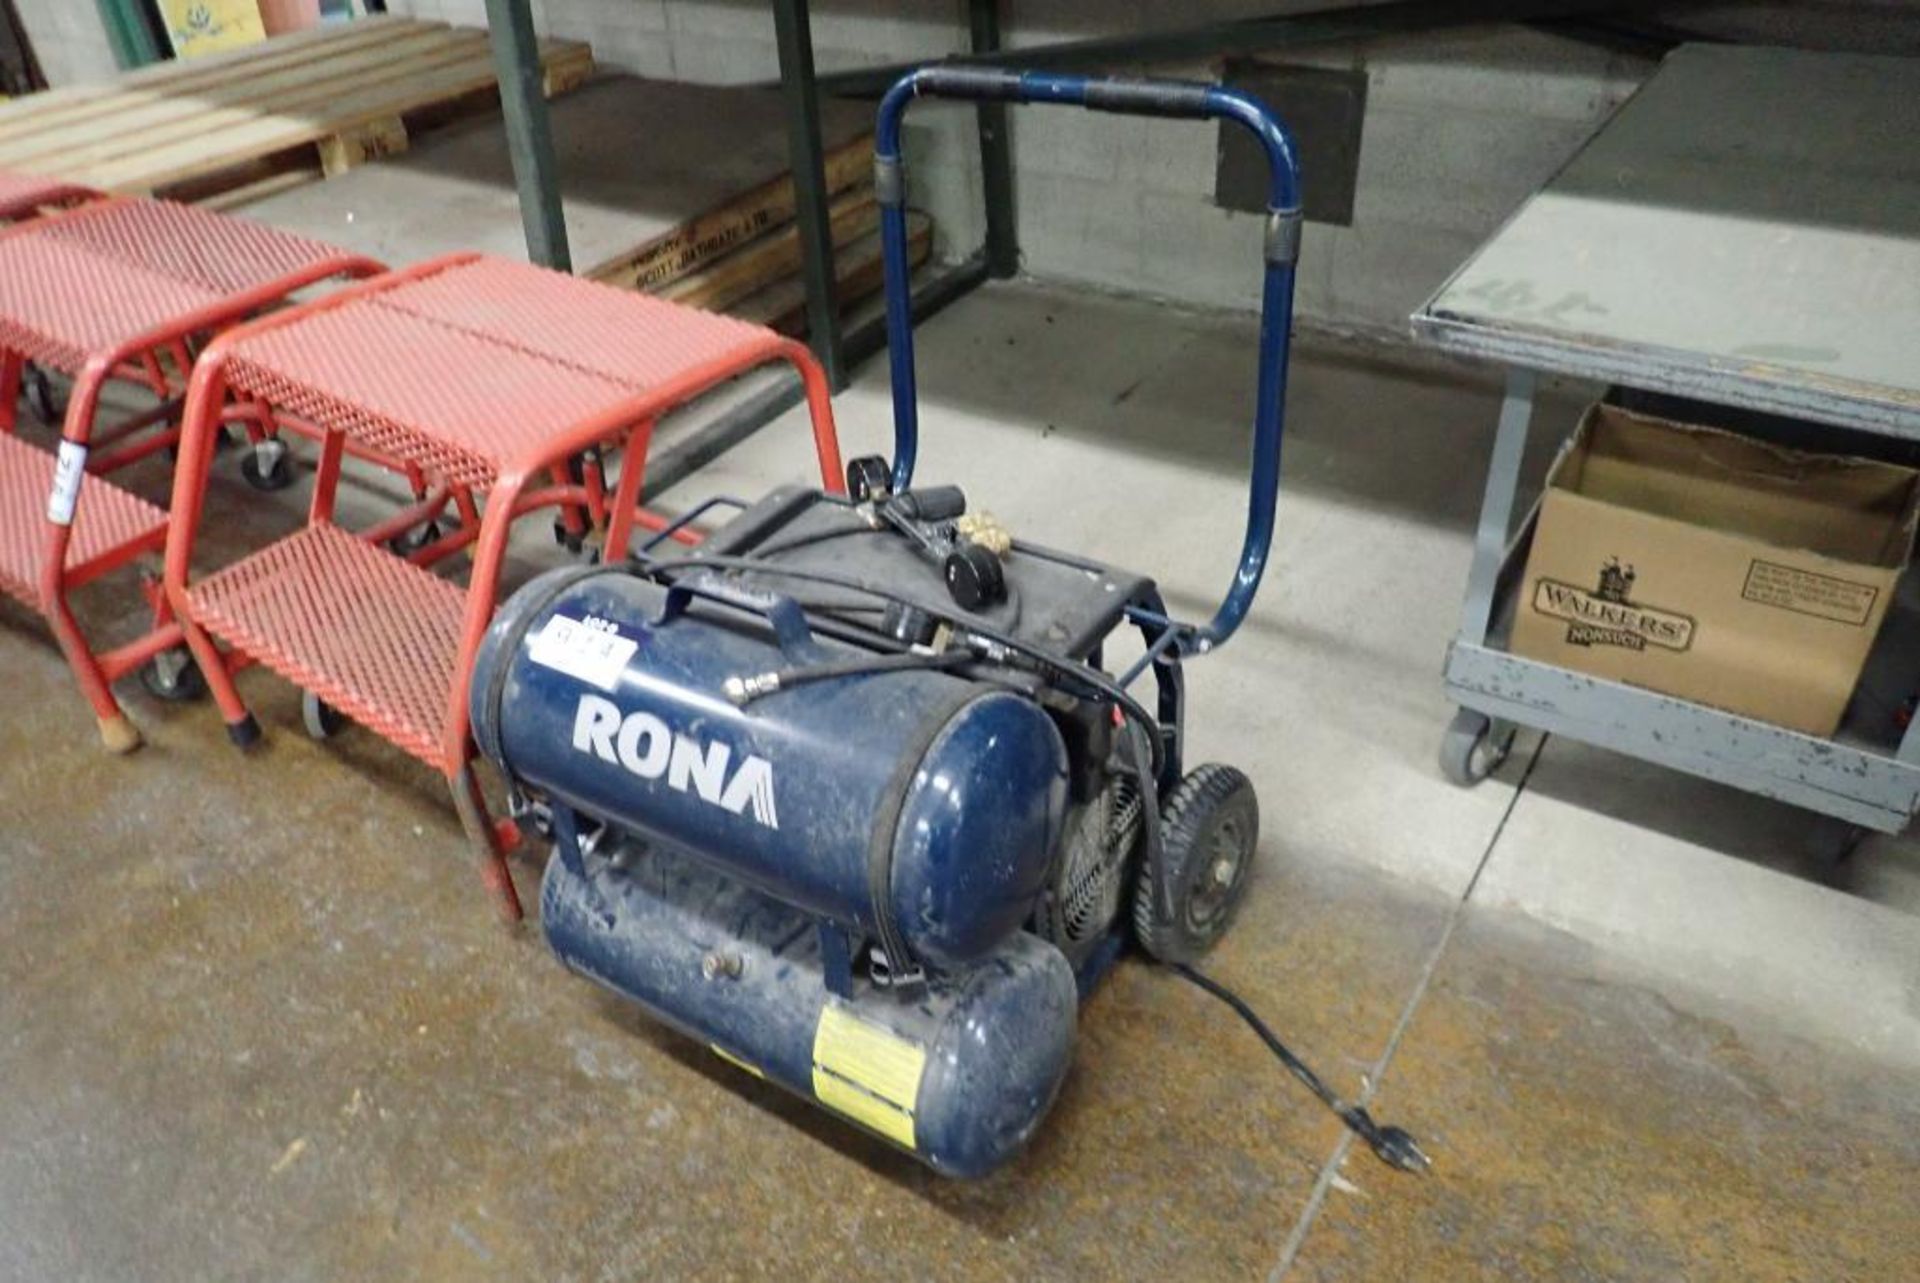 Rona Portable Air Compressor.